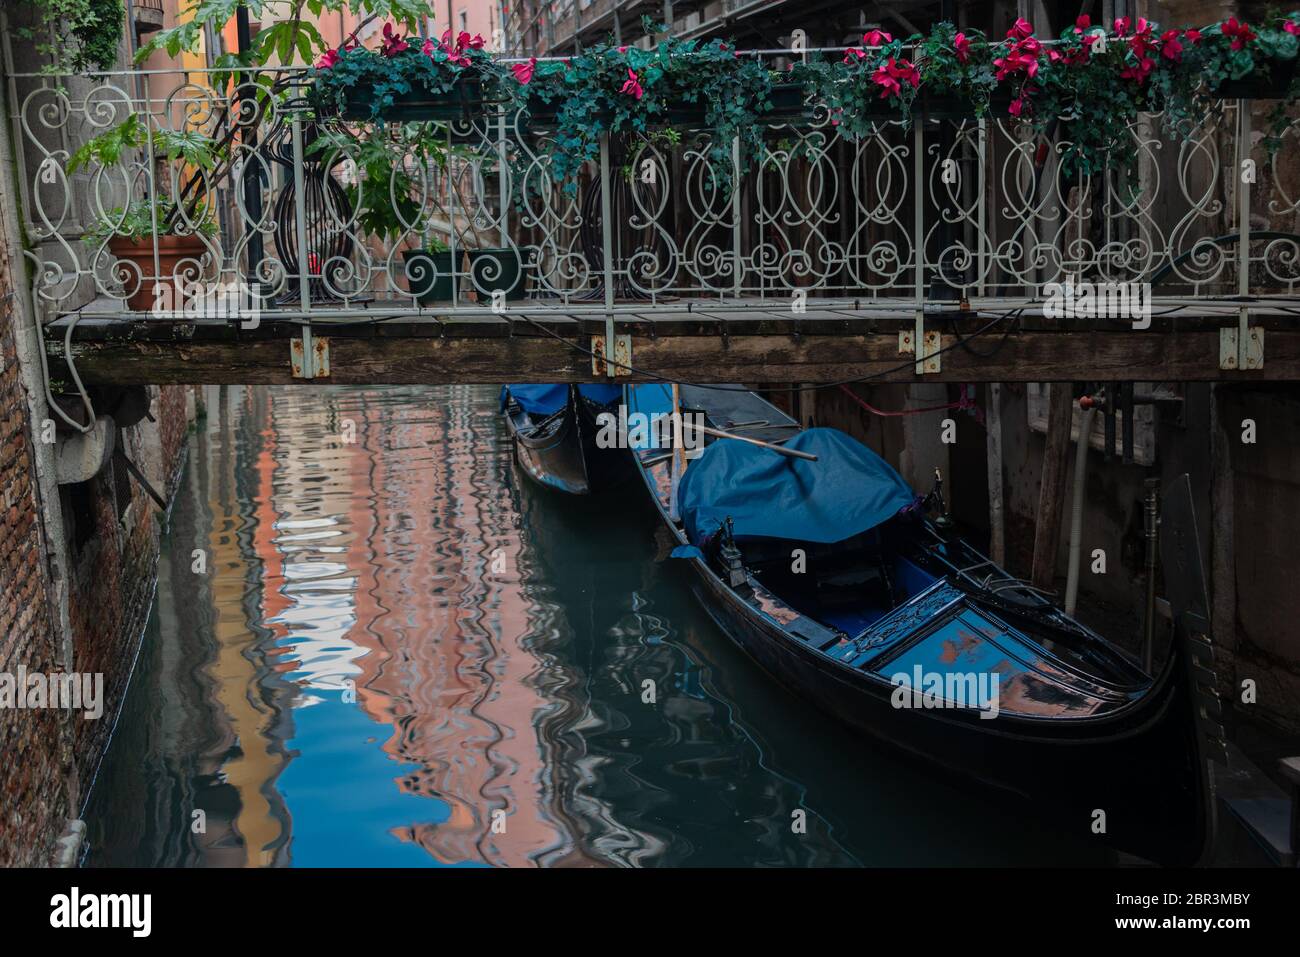 Impressioni invernali della 'Serenissima' Venezia in dicembre Foto Stock